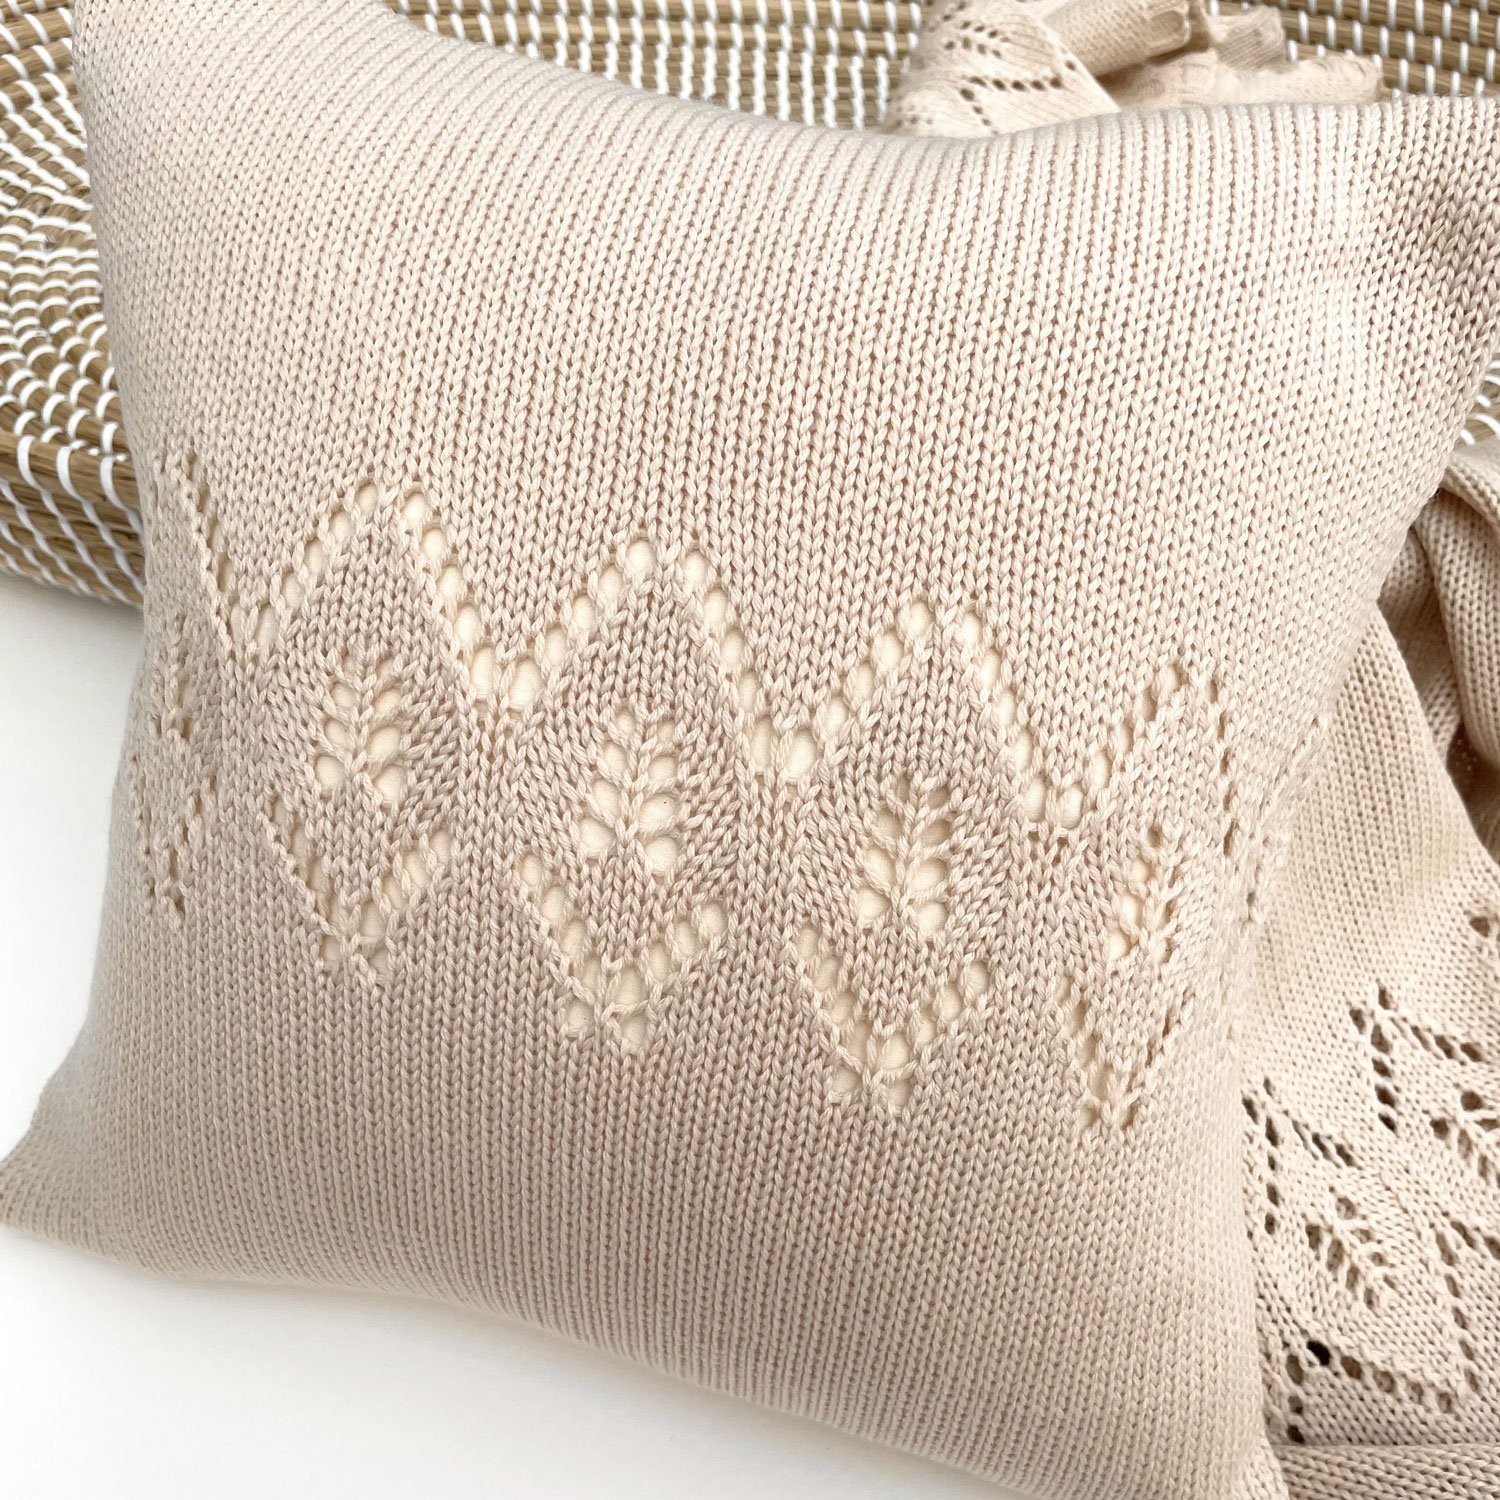 lace cushion